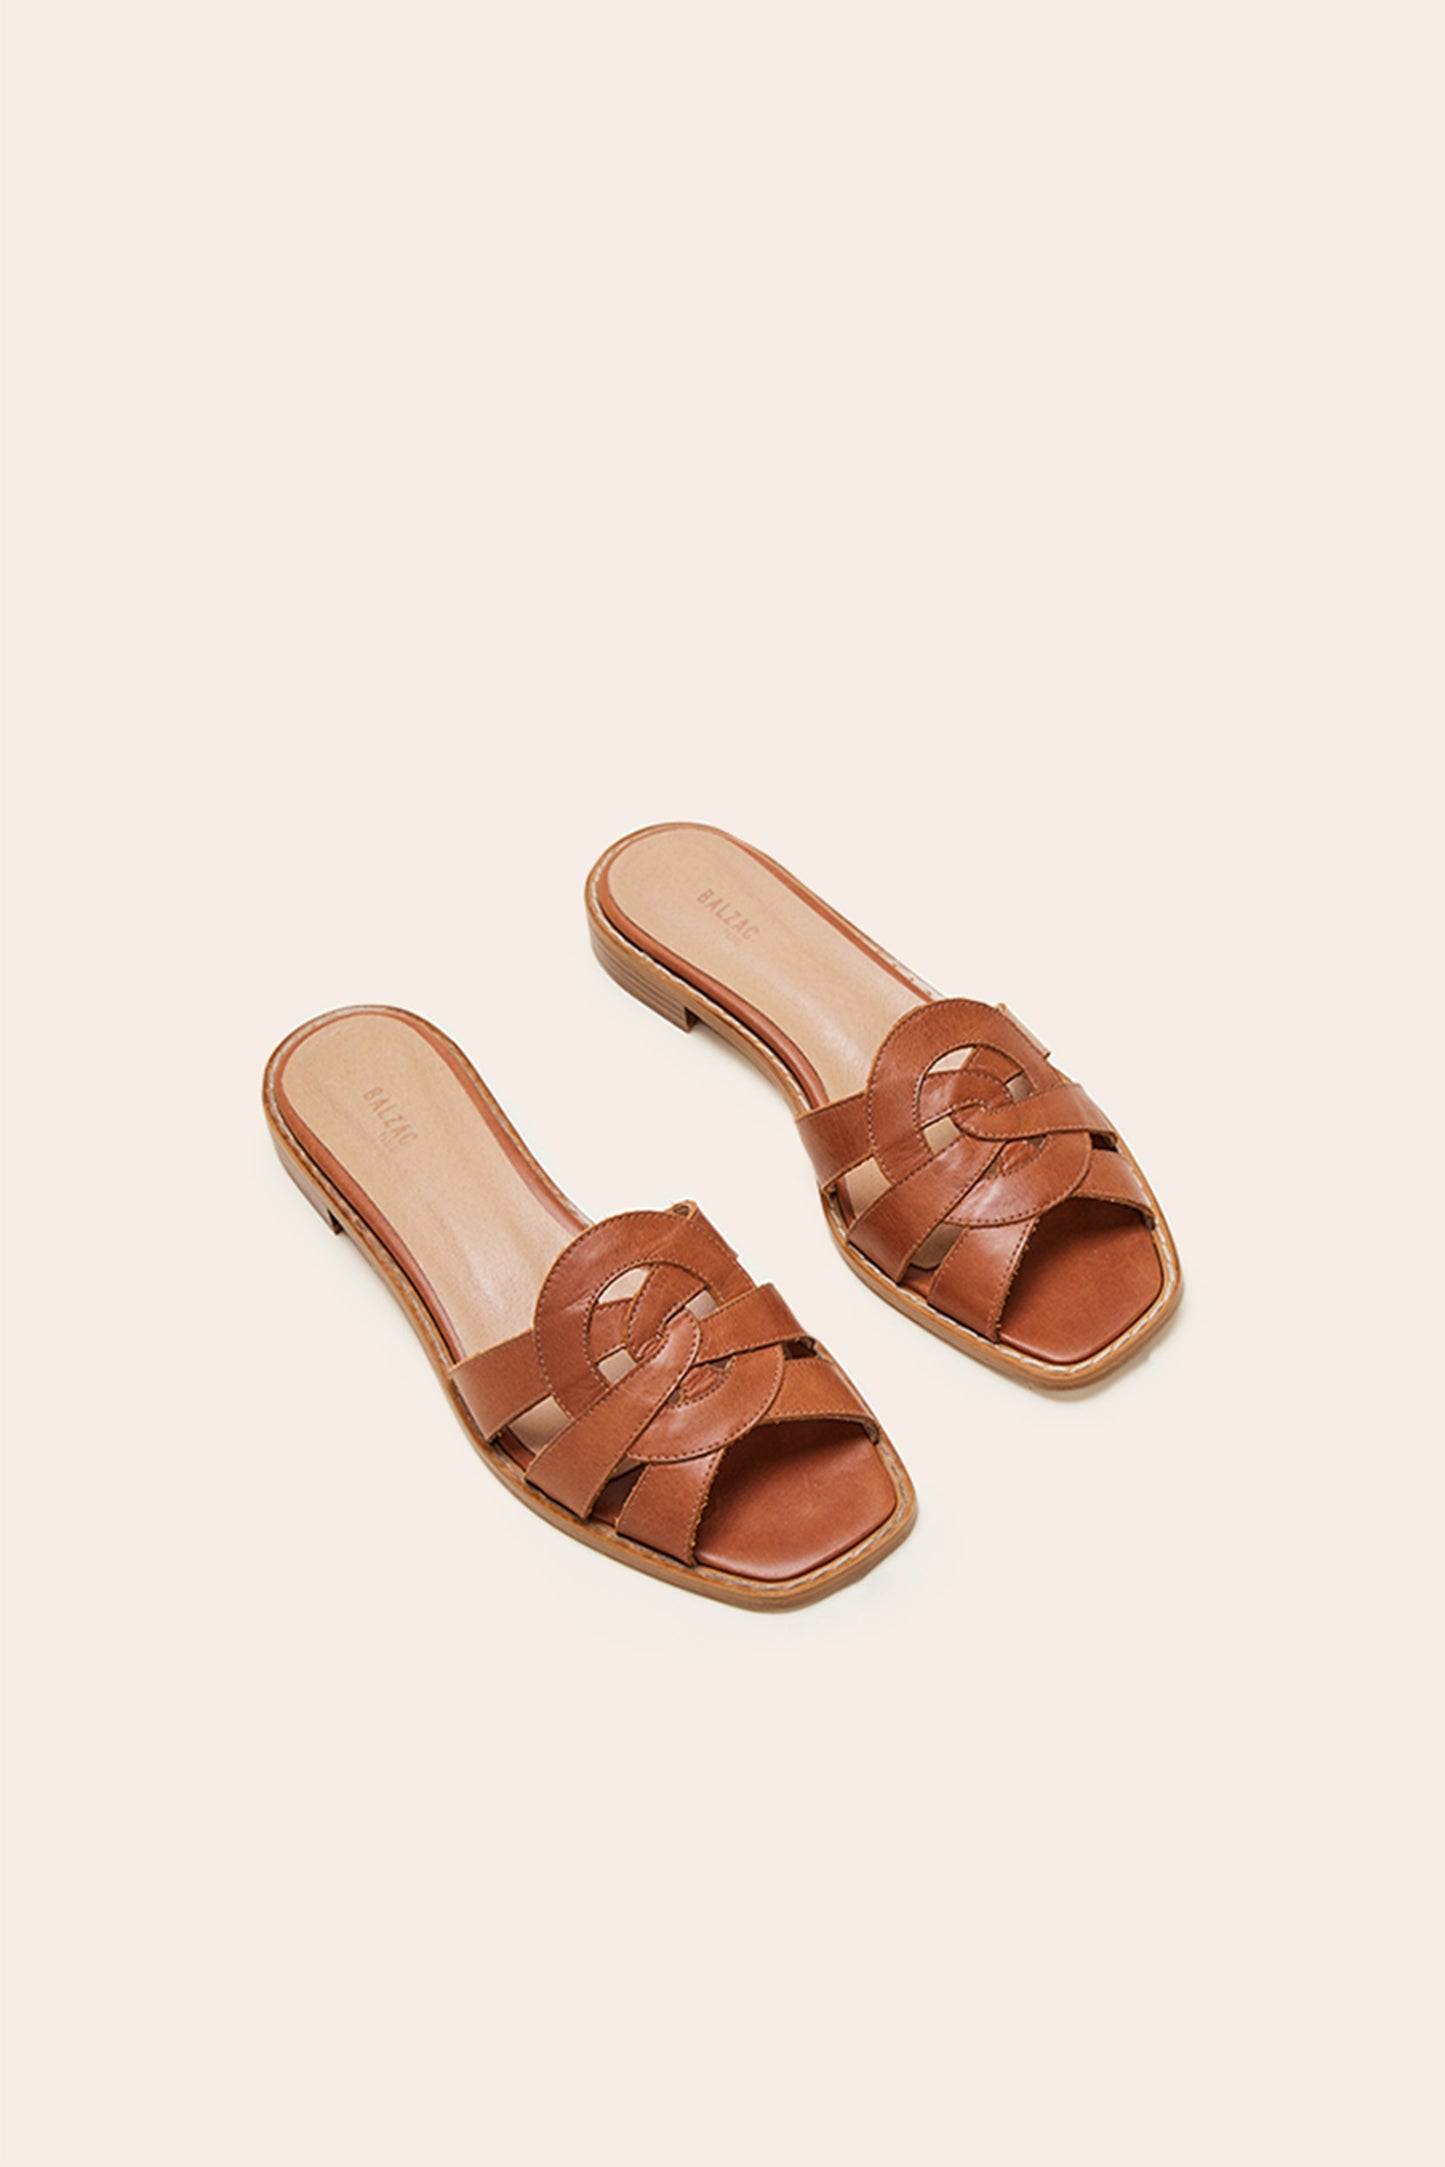 Melisse cognac sandals